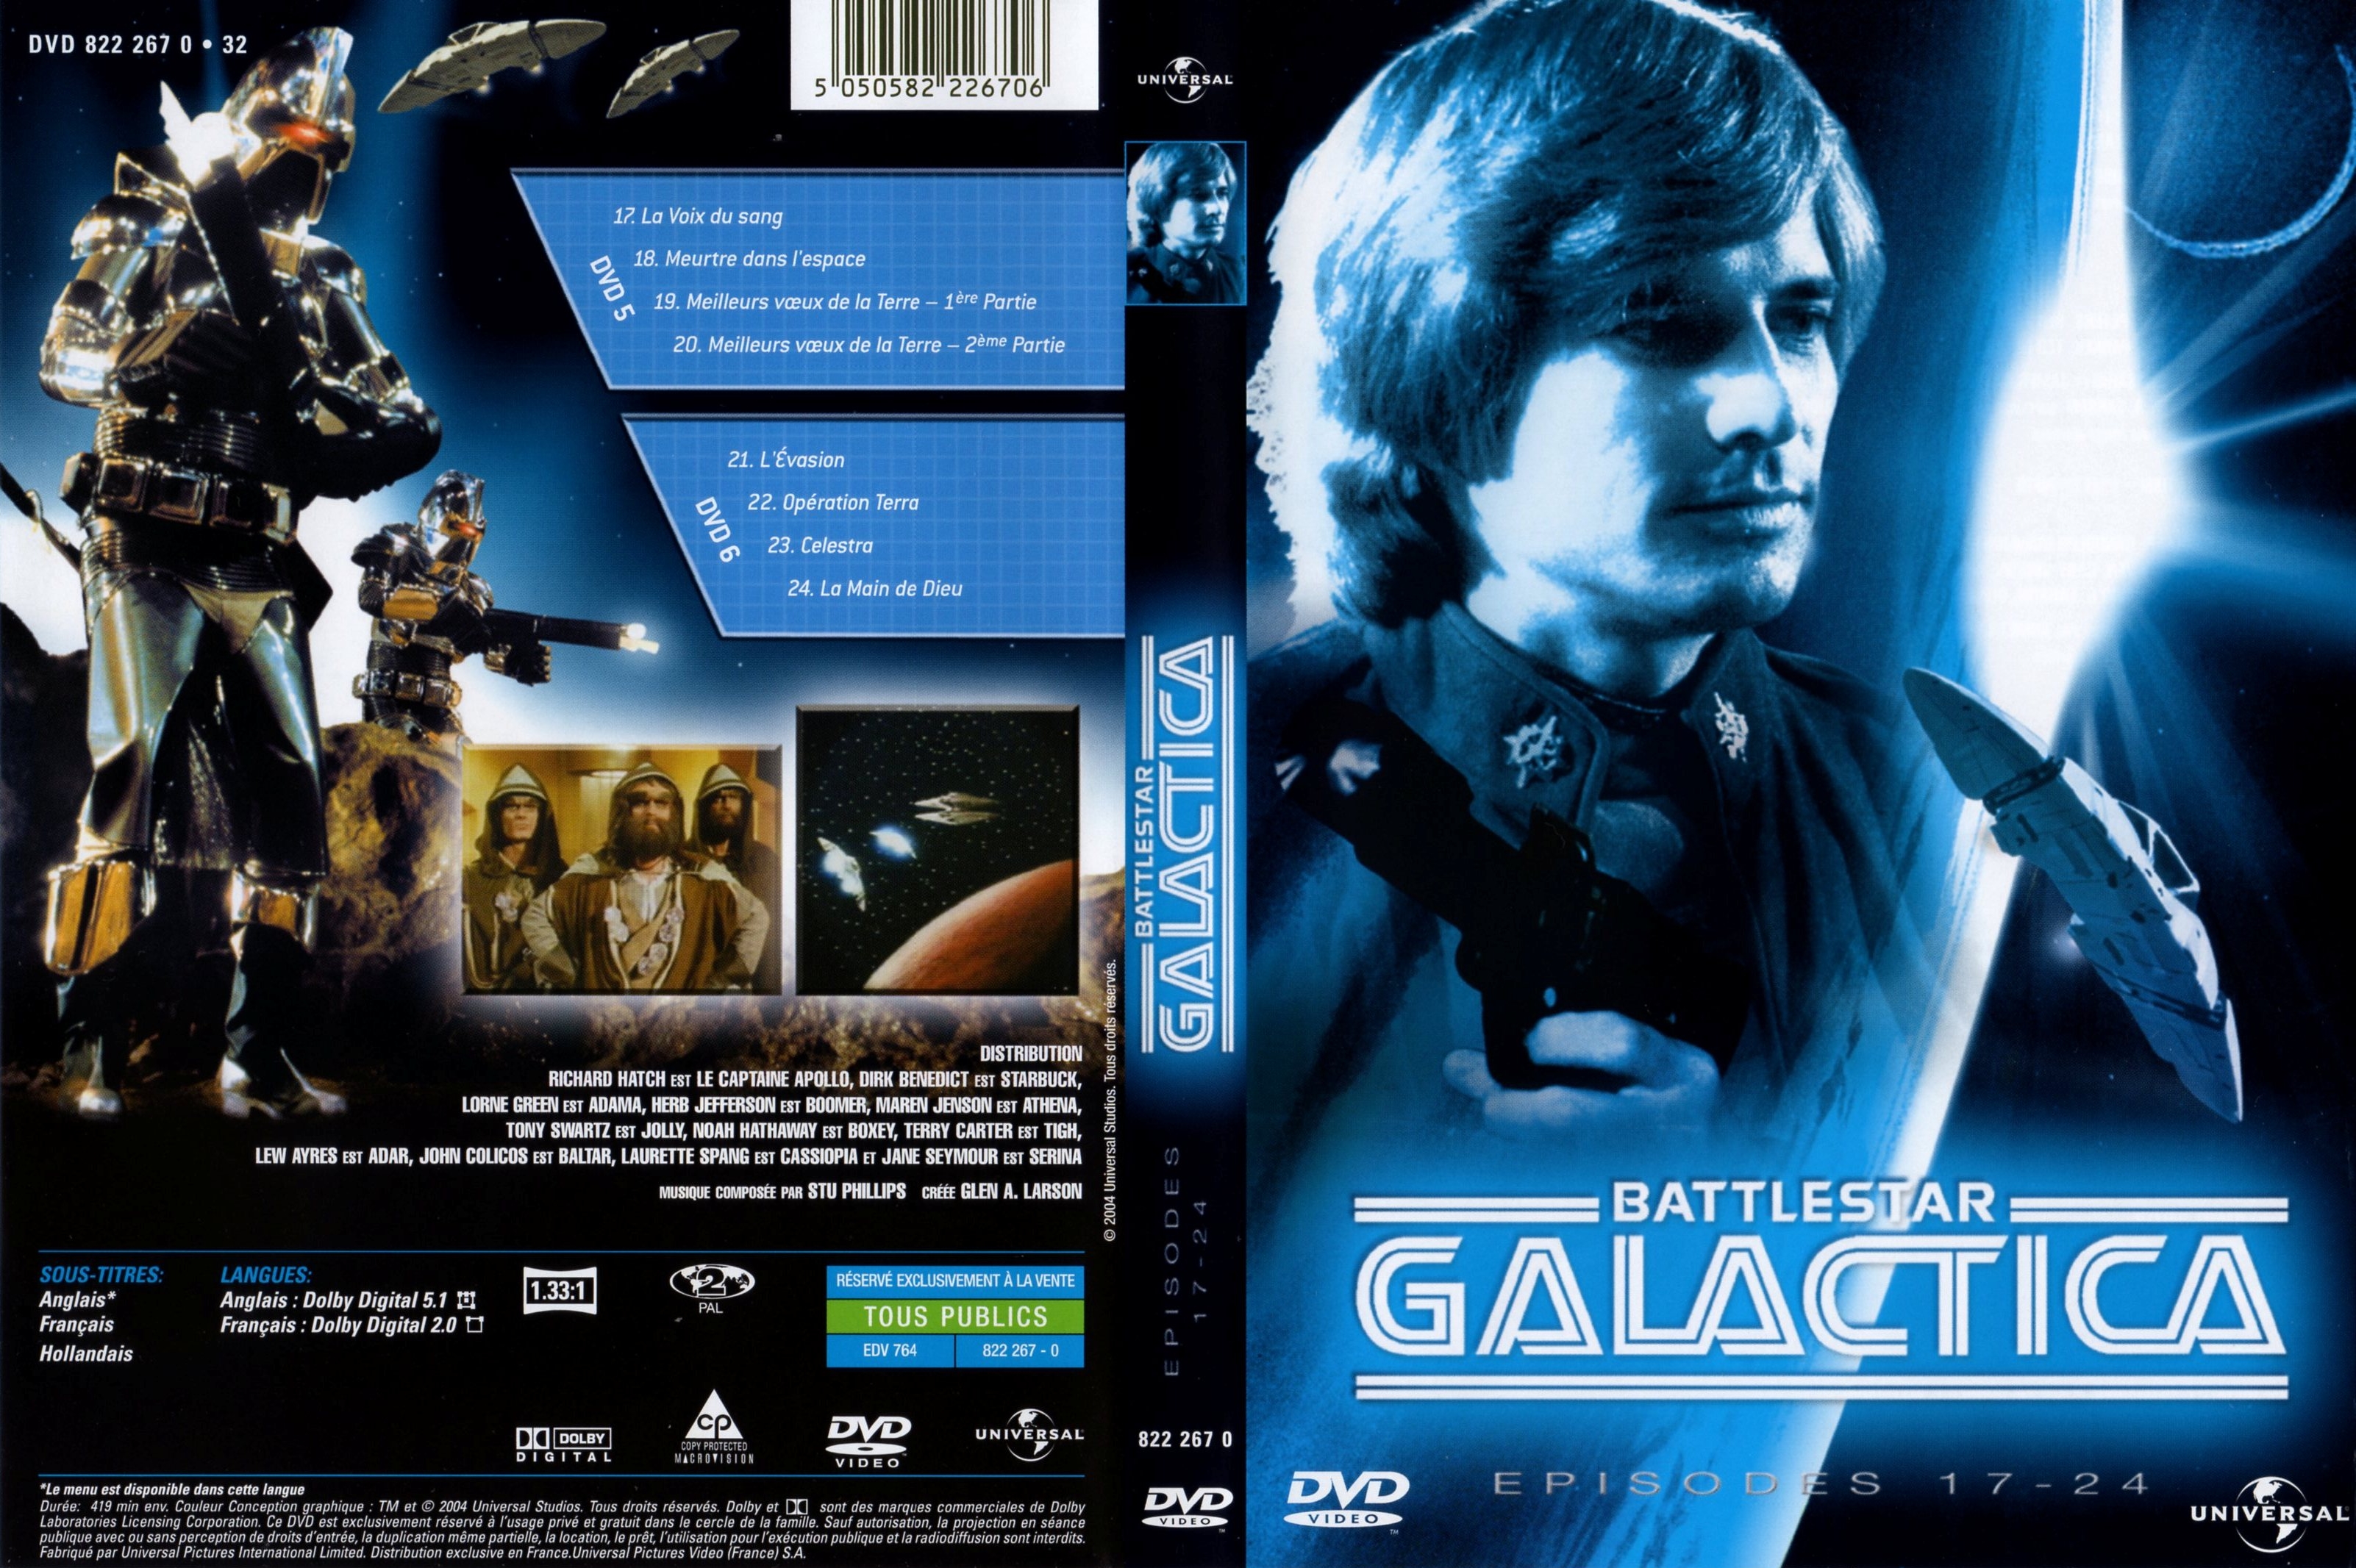 Jaquette DVD Battlestar galactica DVD 5 et 6